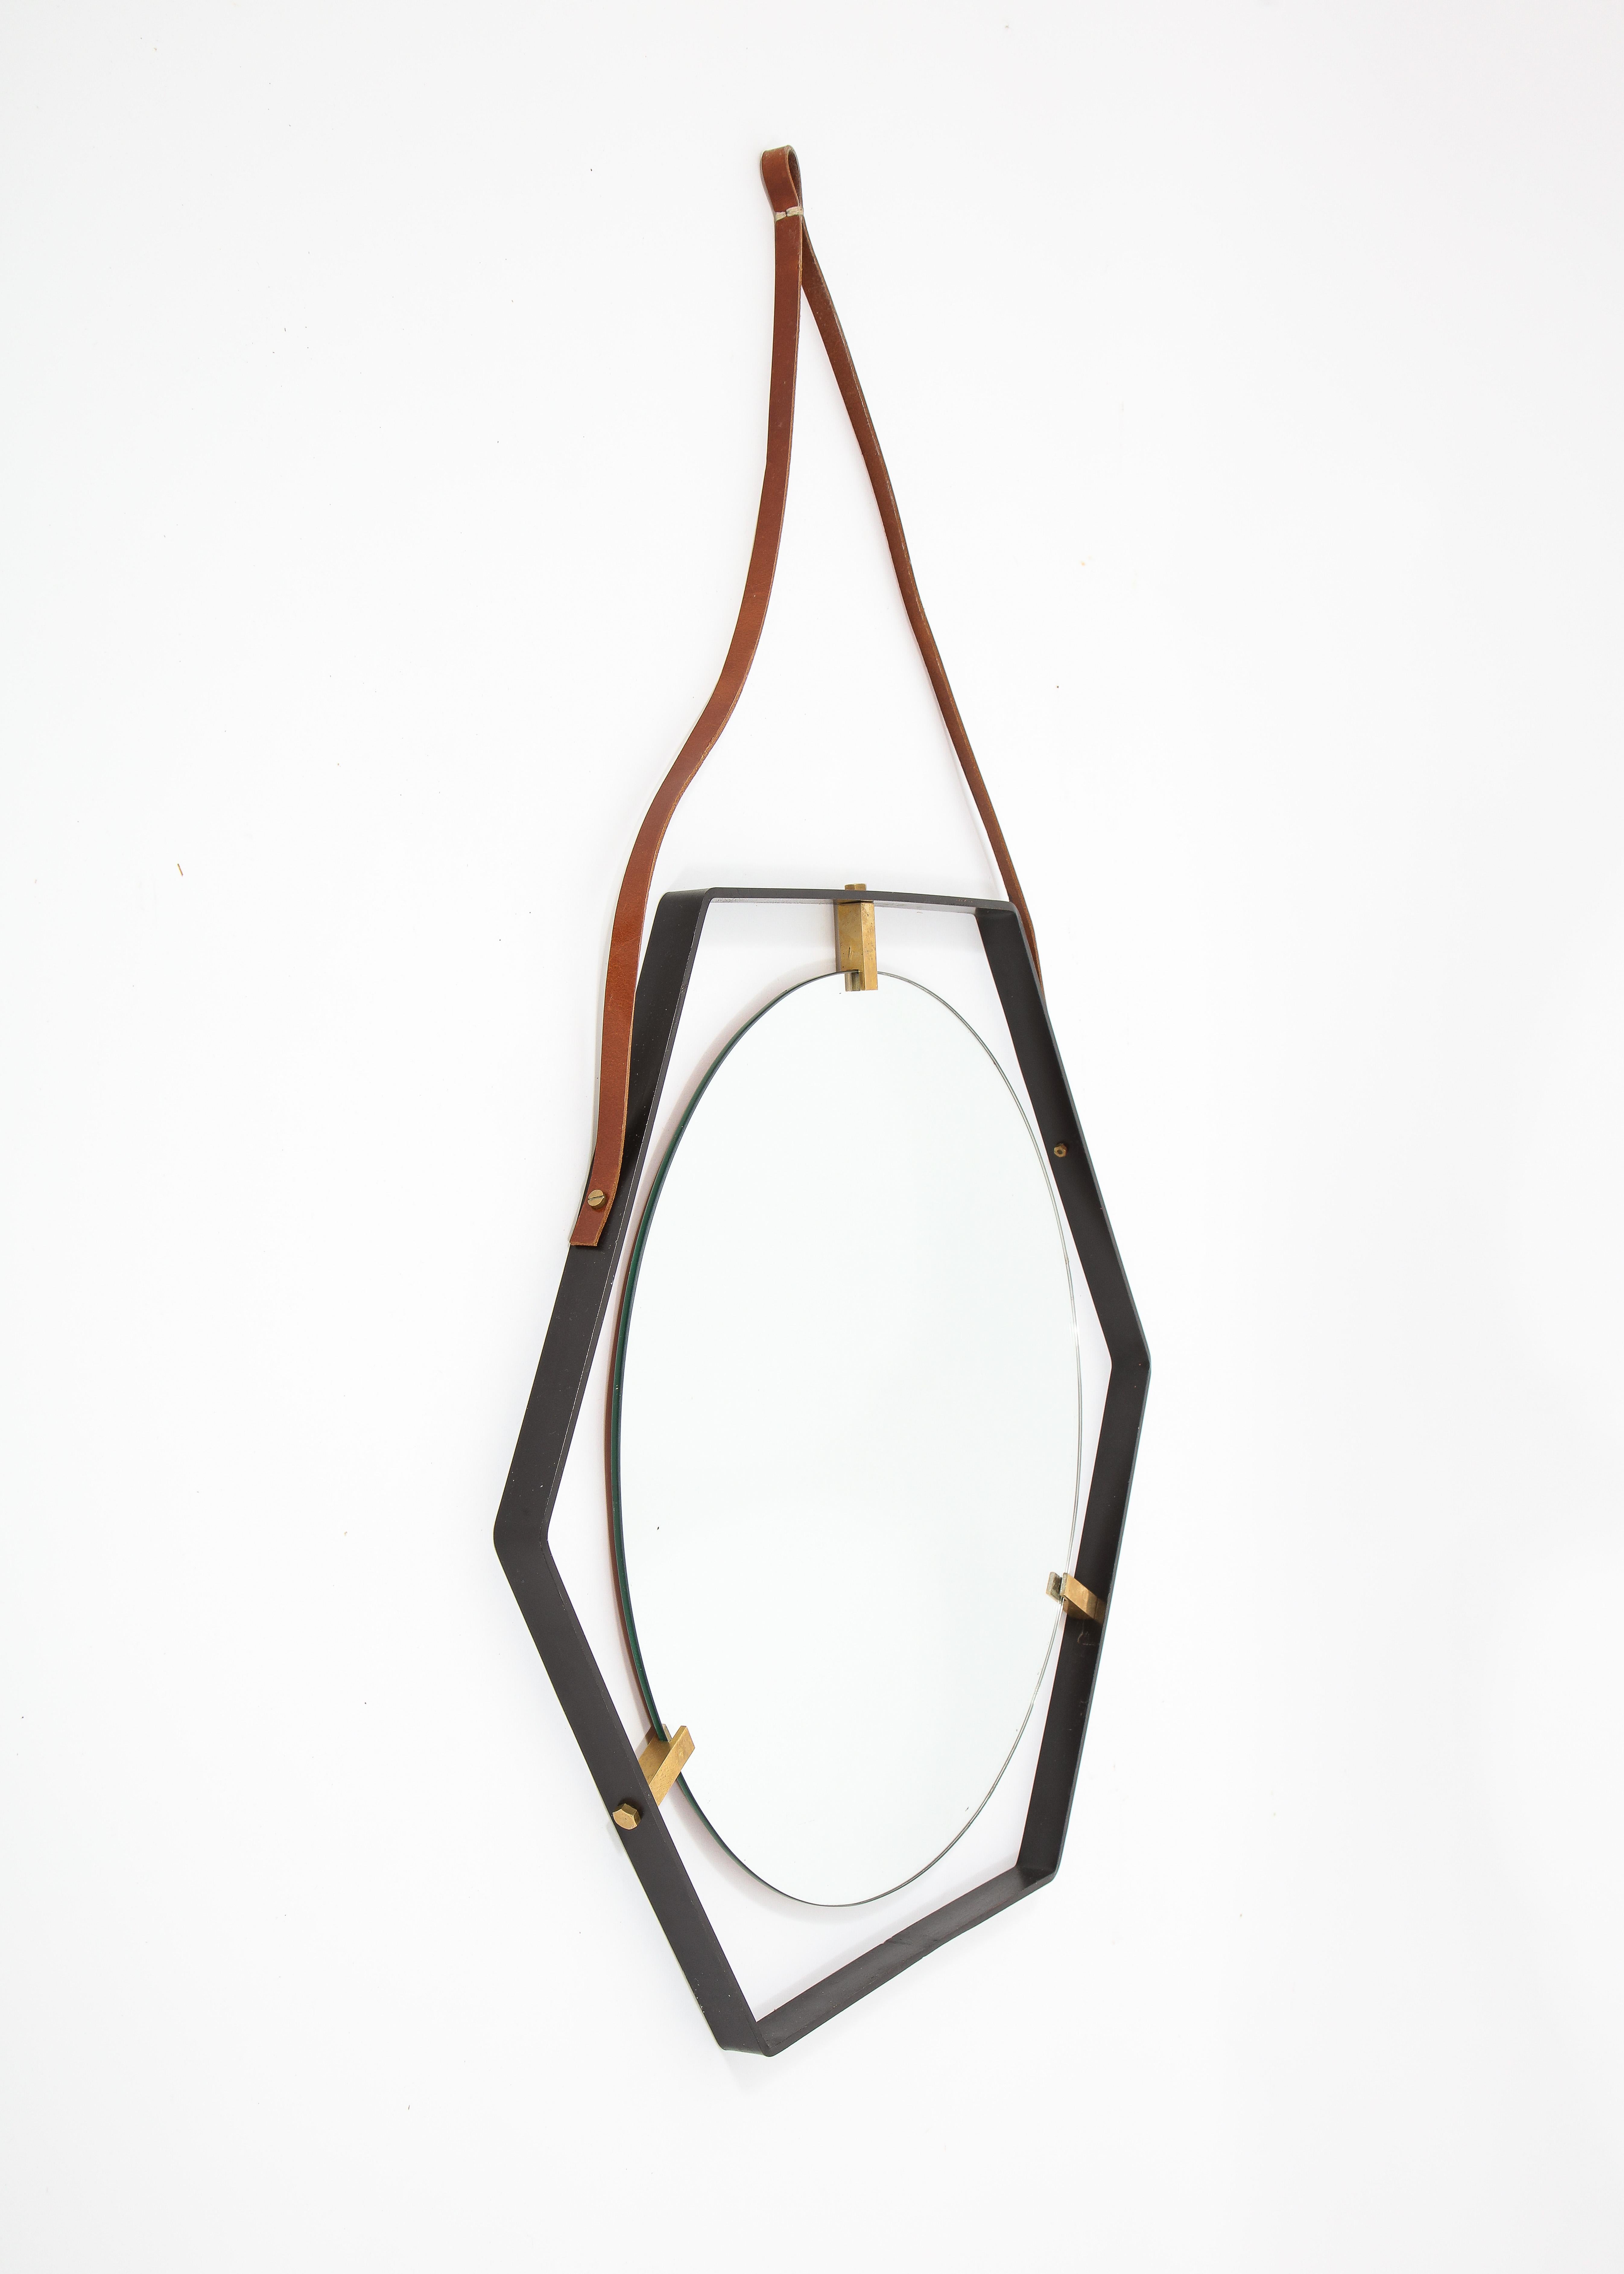 Elegant miroir octogonal avec supports en laiton dans un cadre en fer forgé et suspendu par une ceinture en cuir.